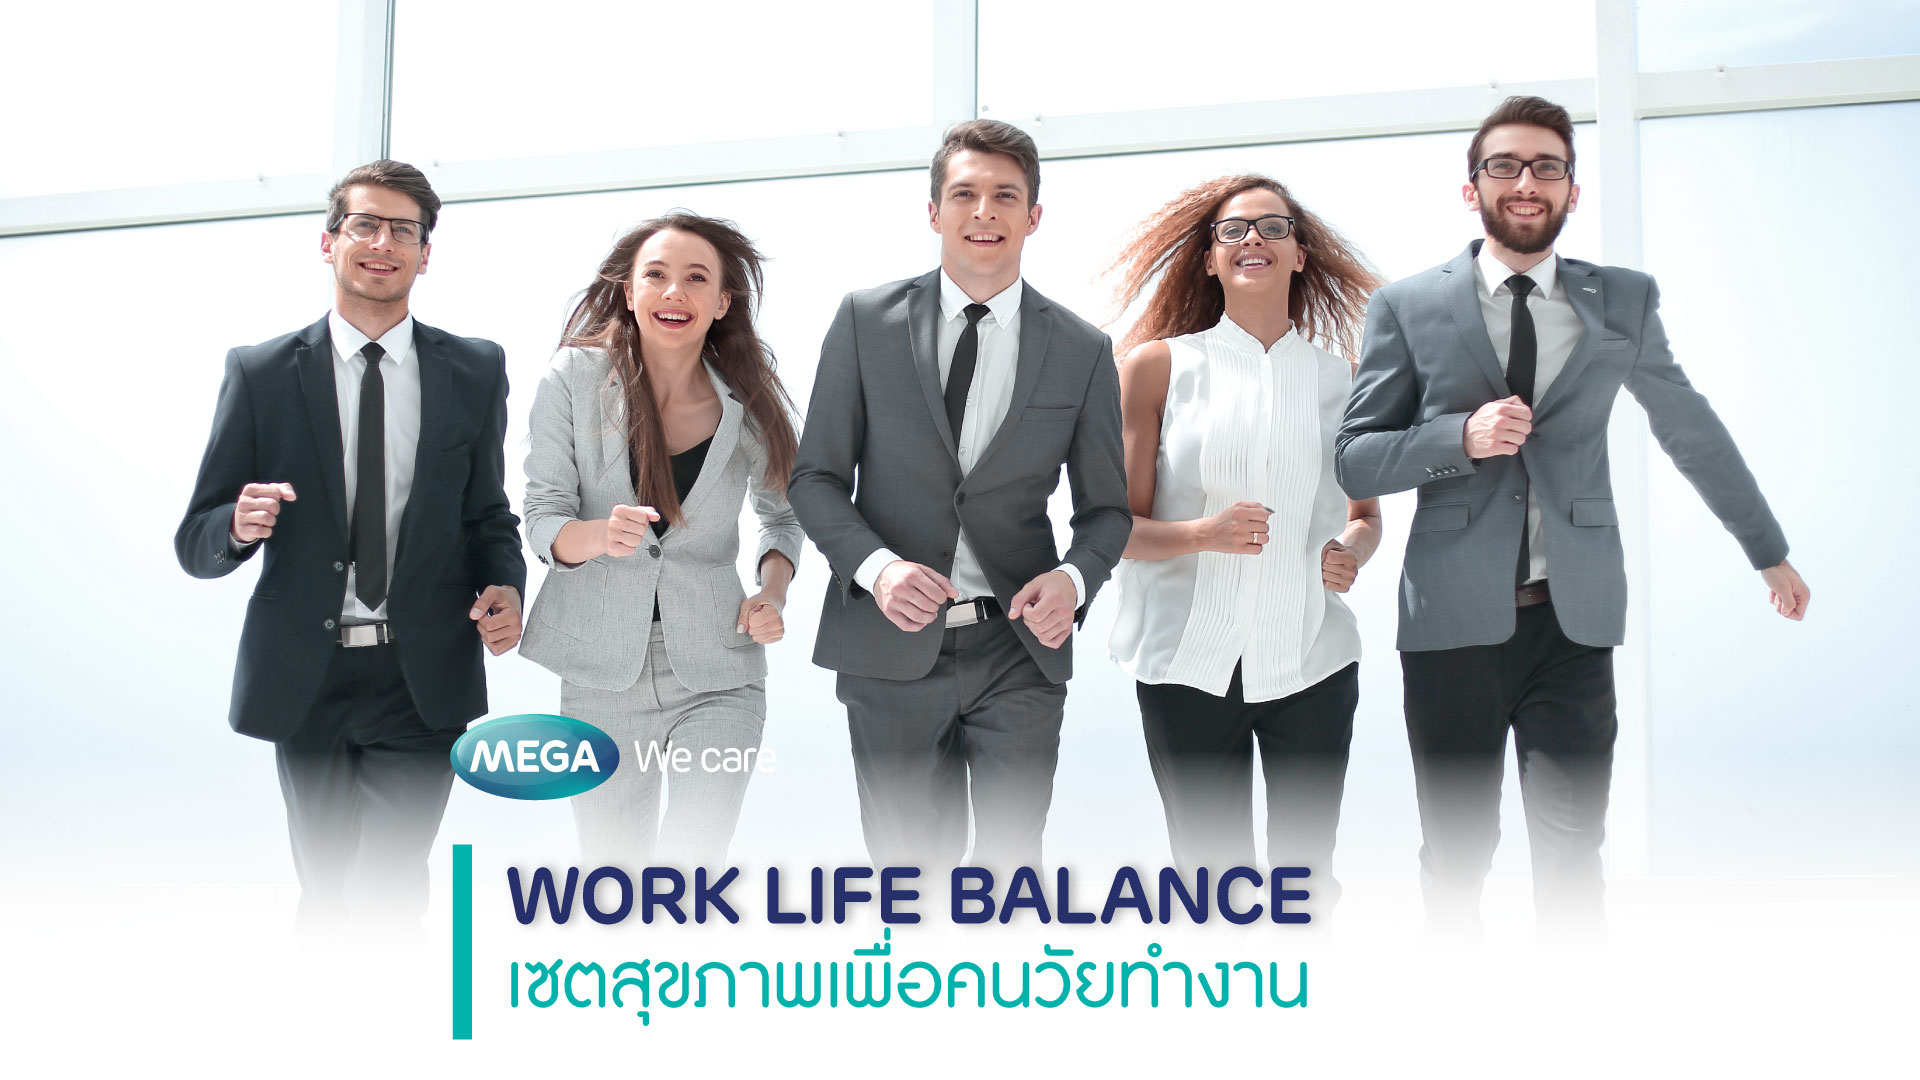 Work Life Balance เซตสุขภาพเพื่อคนวัยทำงาน